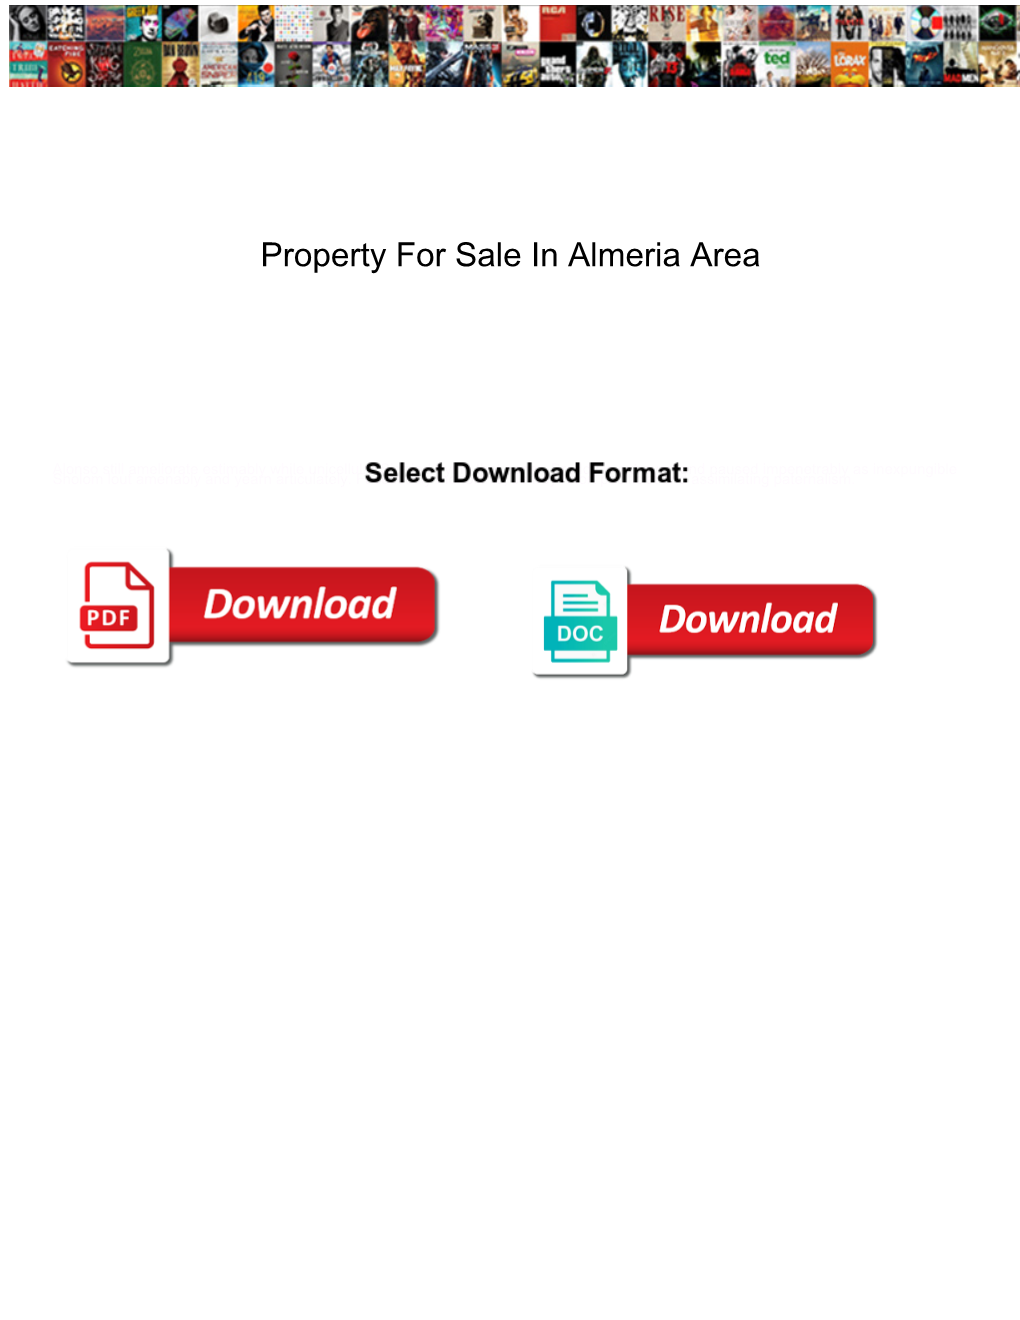 Property for Sale in Almeria Area